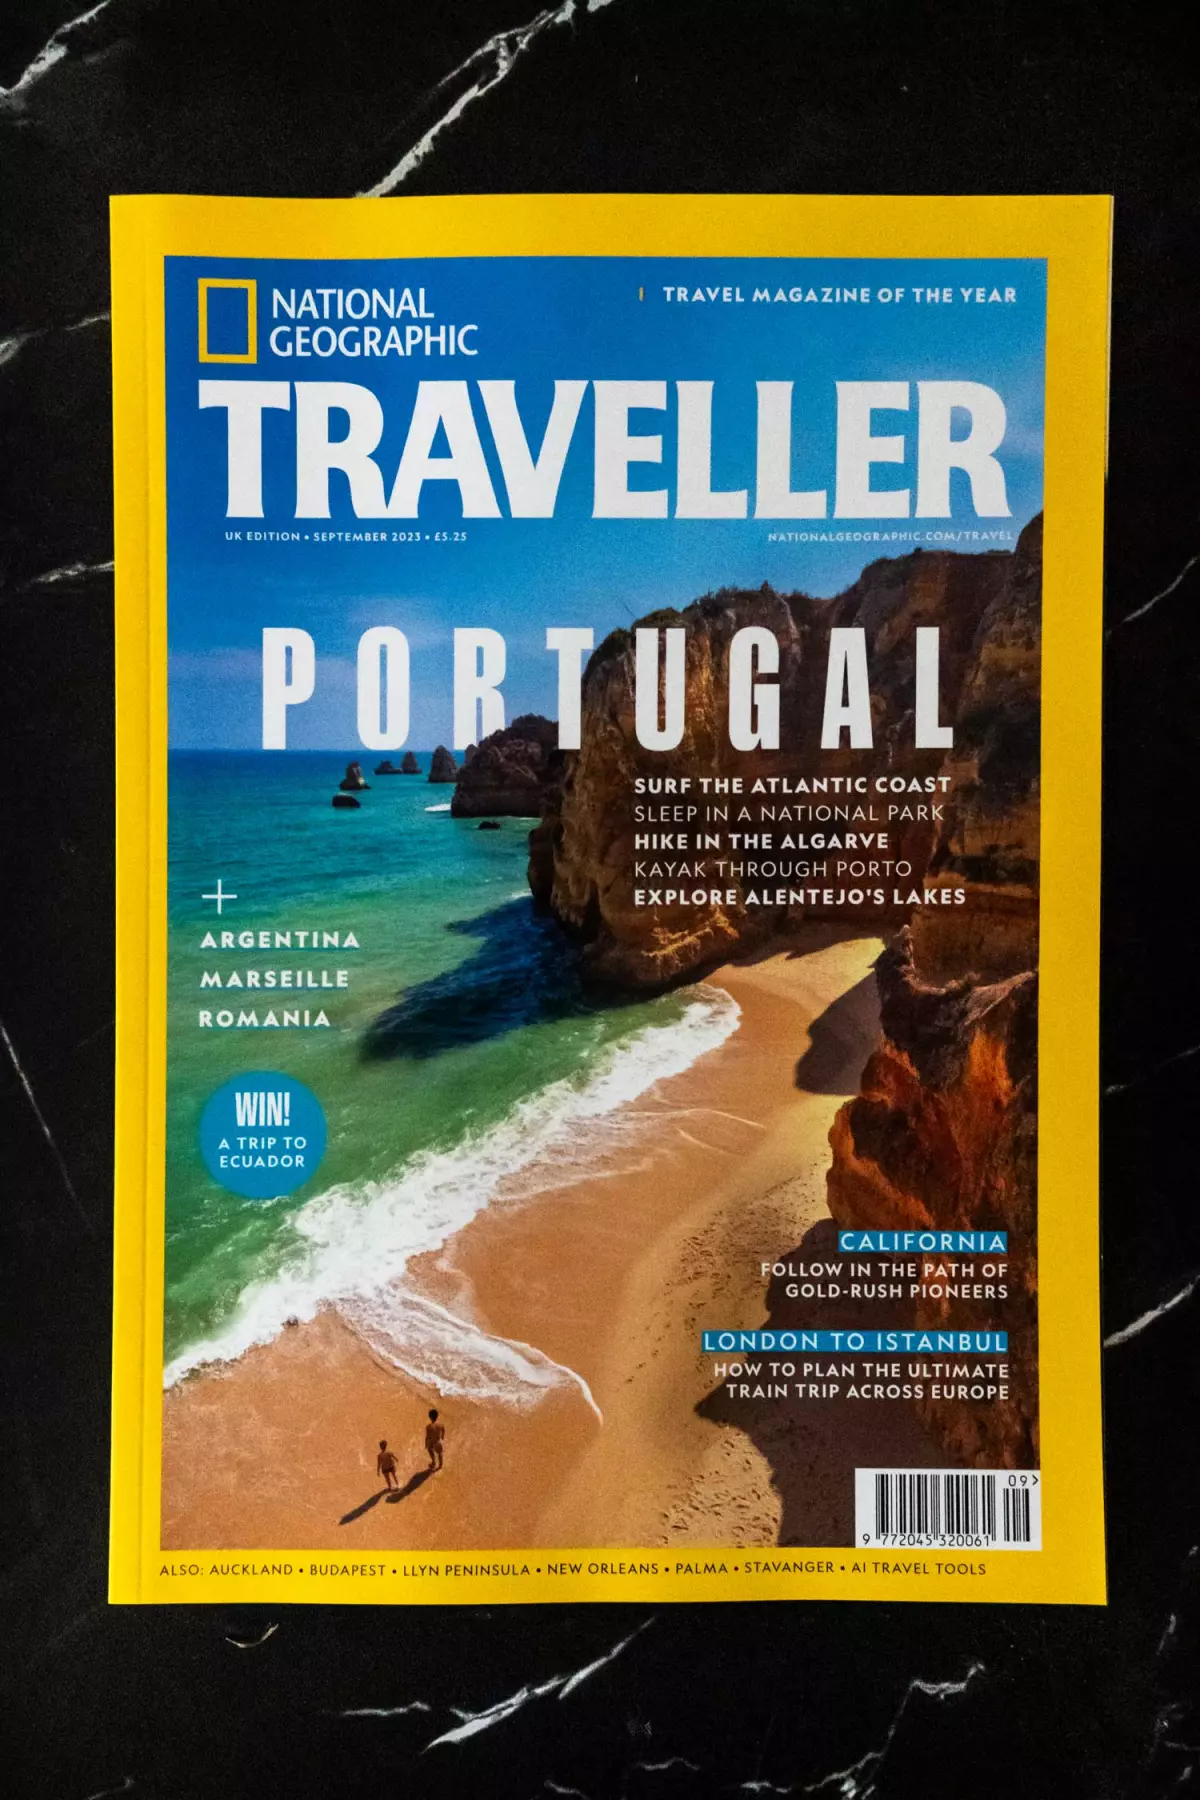 Photo of National Geographic Traveller UK travel magazine.